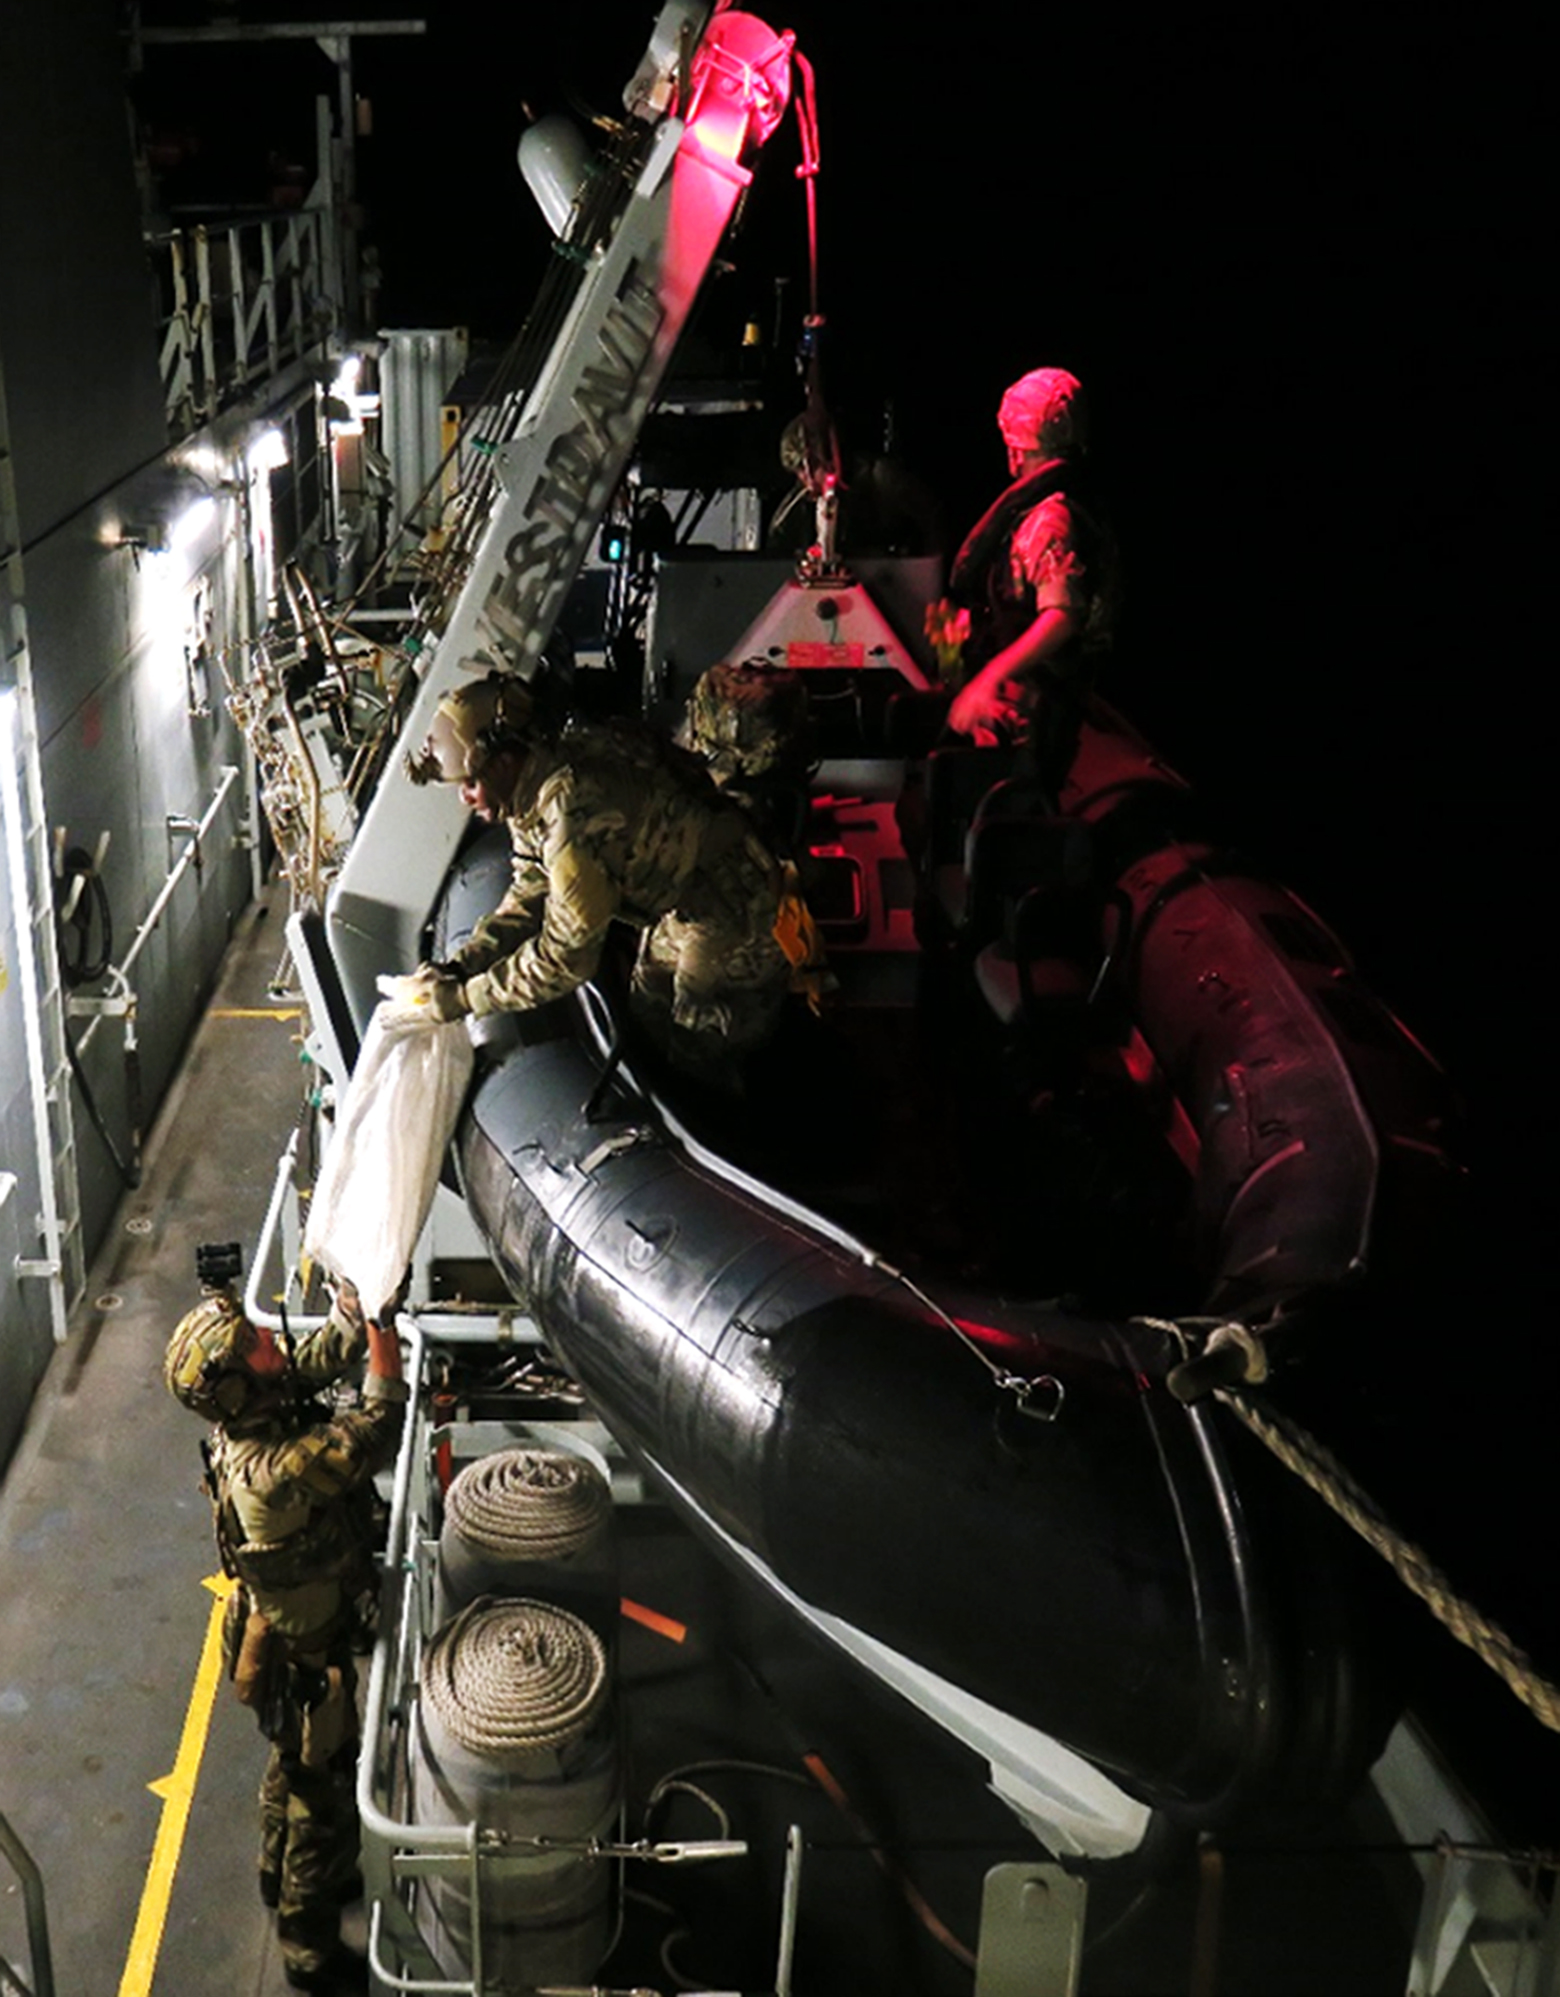 Matrosen fingen das Schnellboot ab, beschlagnahmten die Drogen und hielten die Besatzung fest, bevor es dunkel wurde